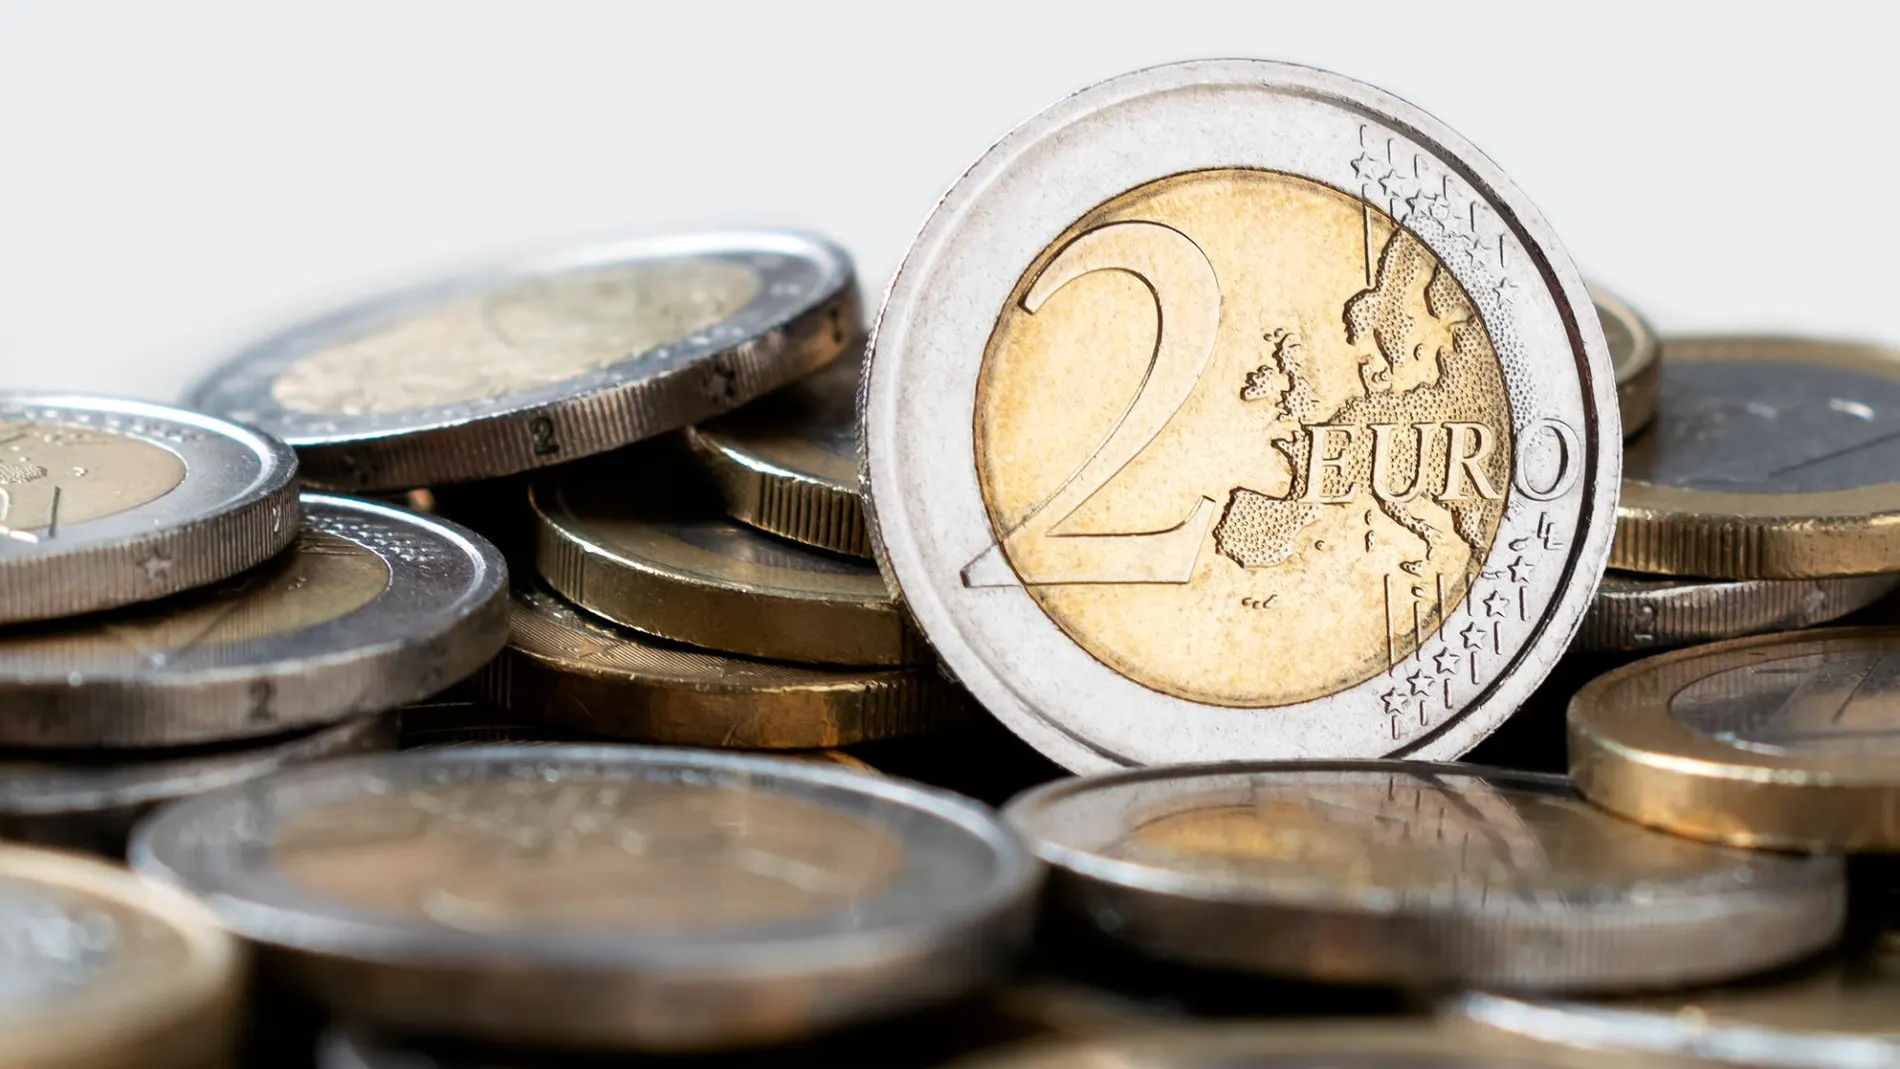 La moneda de dos euros que puedes llevar en el bolsillo sin saber que vale 100 euros